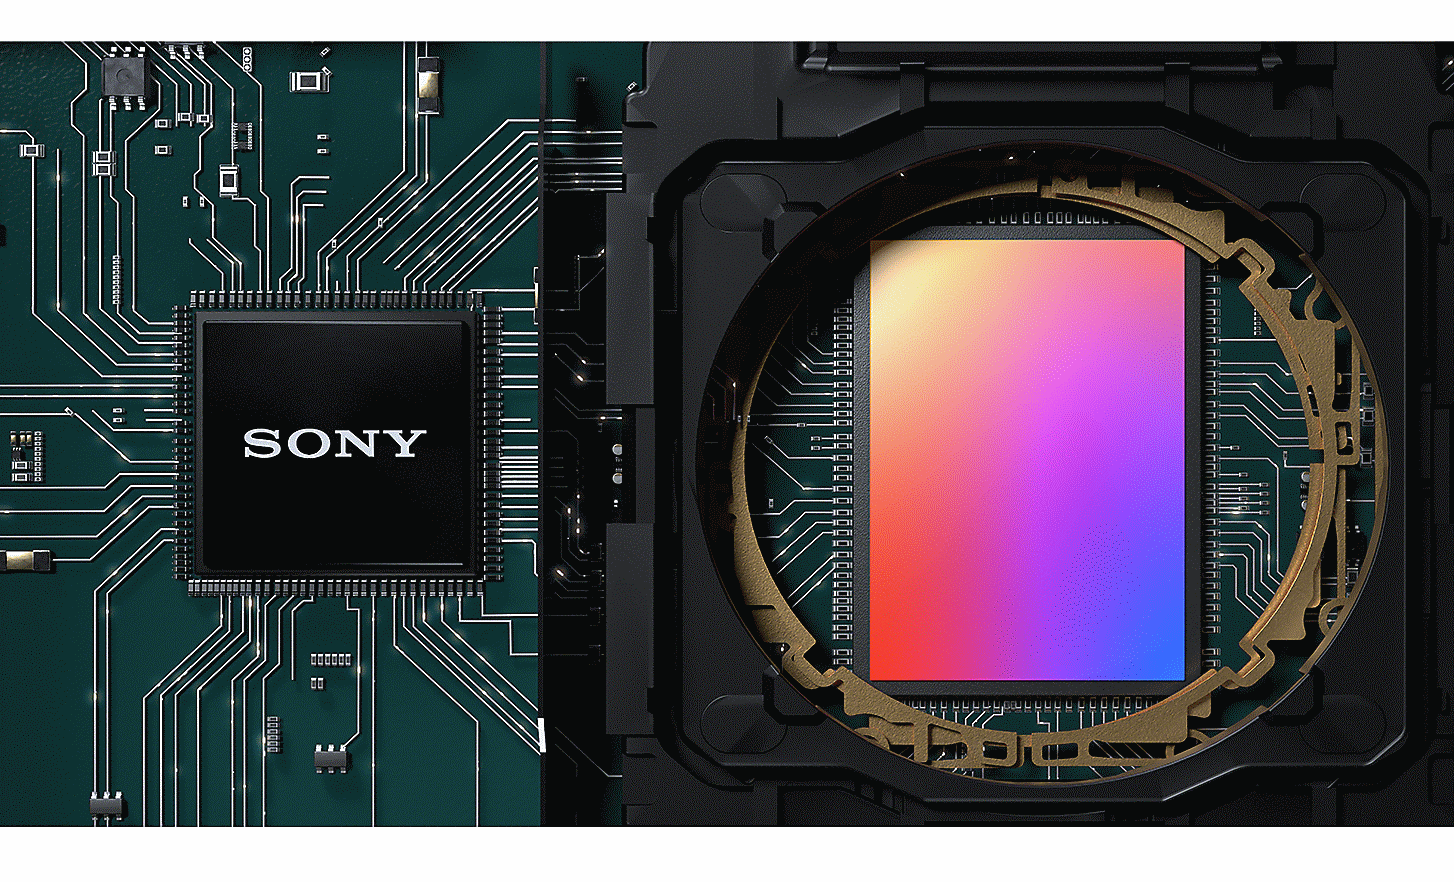 Ảnh cận cảnh bảng mạch có cảm biến hình ảnh loại 1.0 và chip của Sony